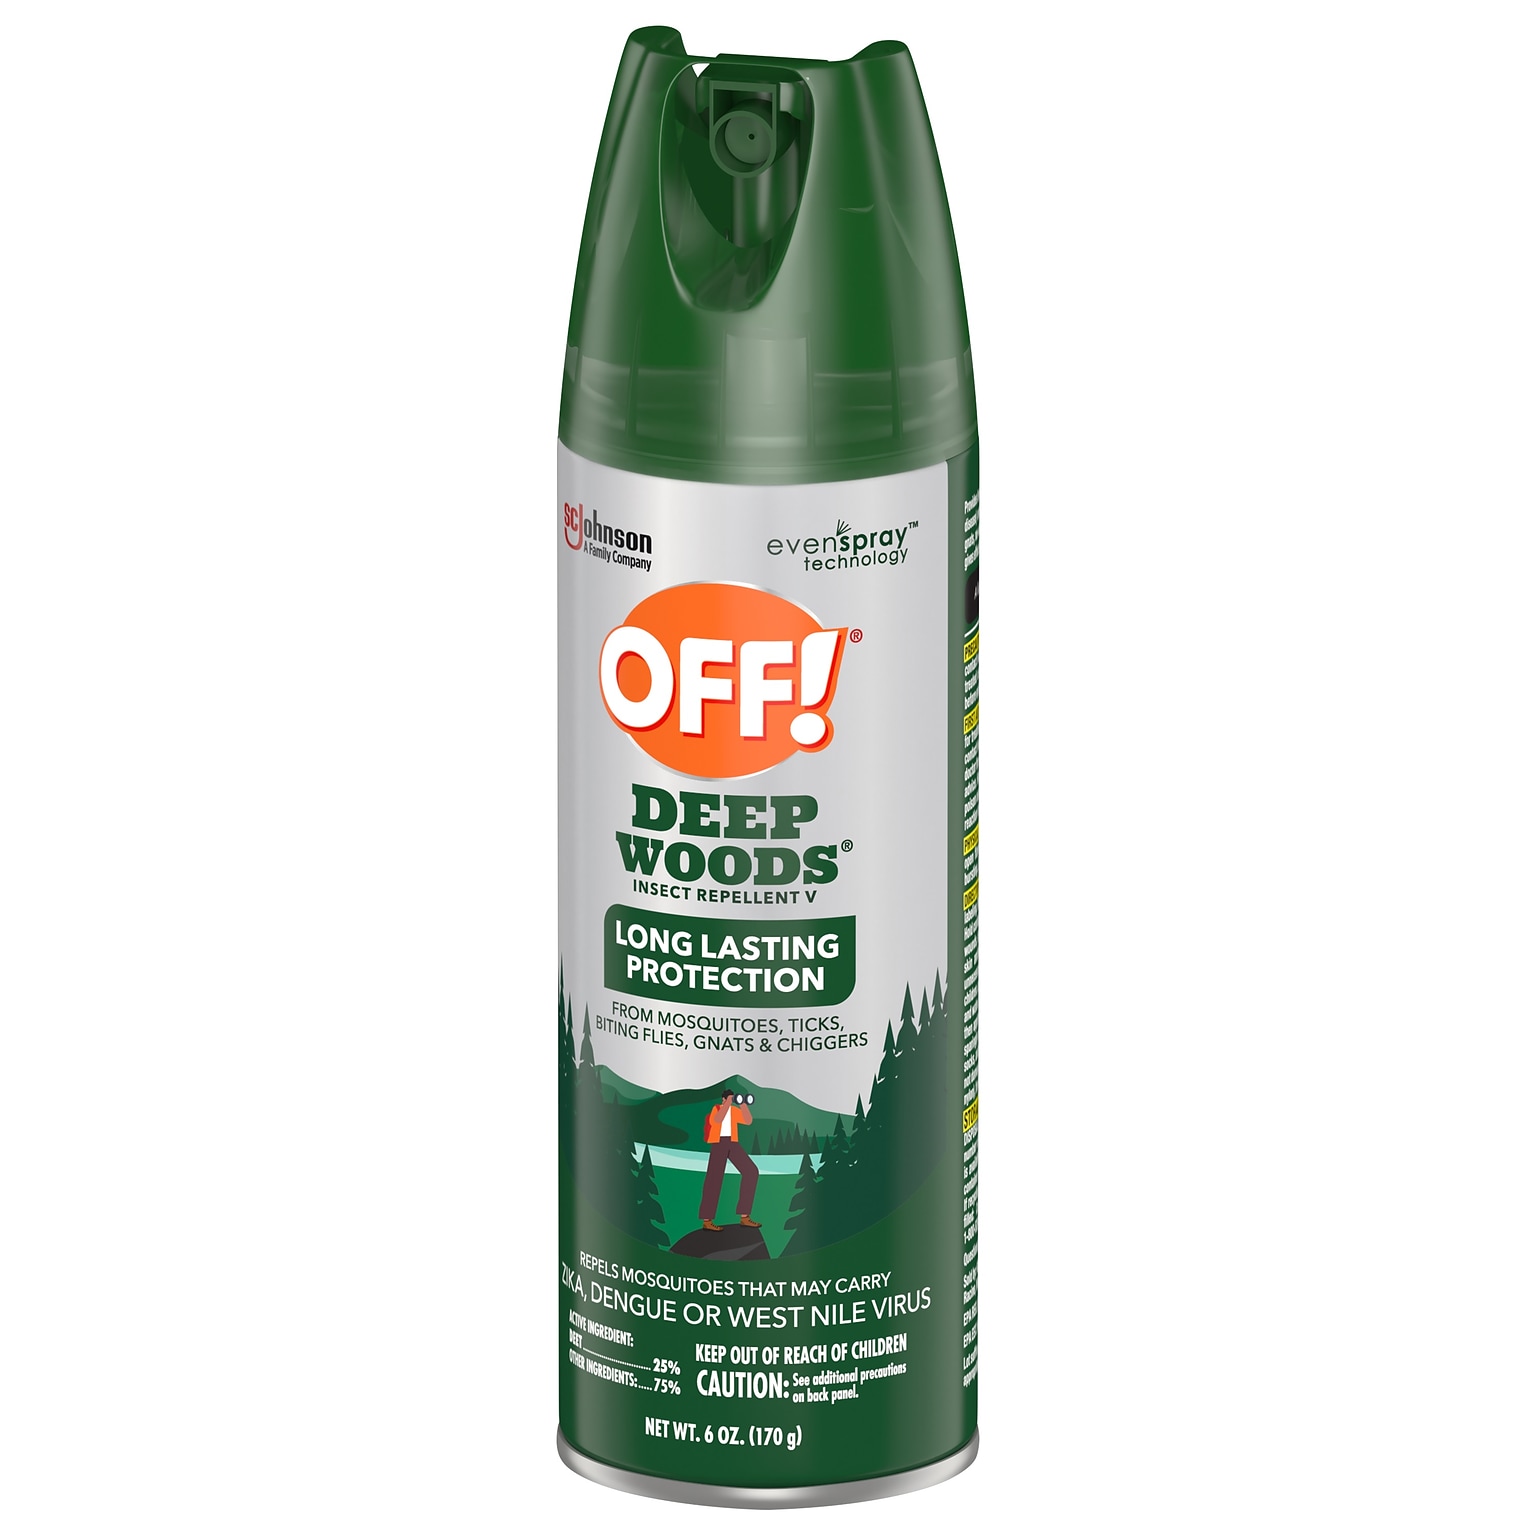 OFF! Deep Woods V Aerosol for Mosquitos, Alcohol Odor, 6 oz., 12/Carton (333242)